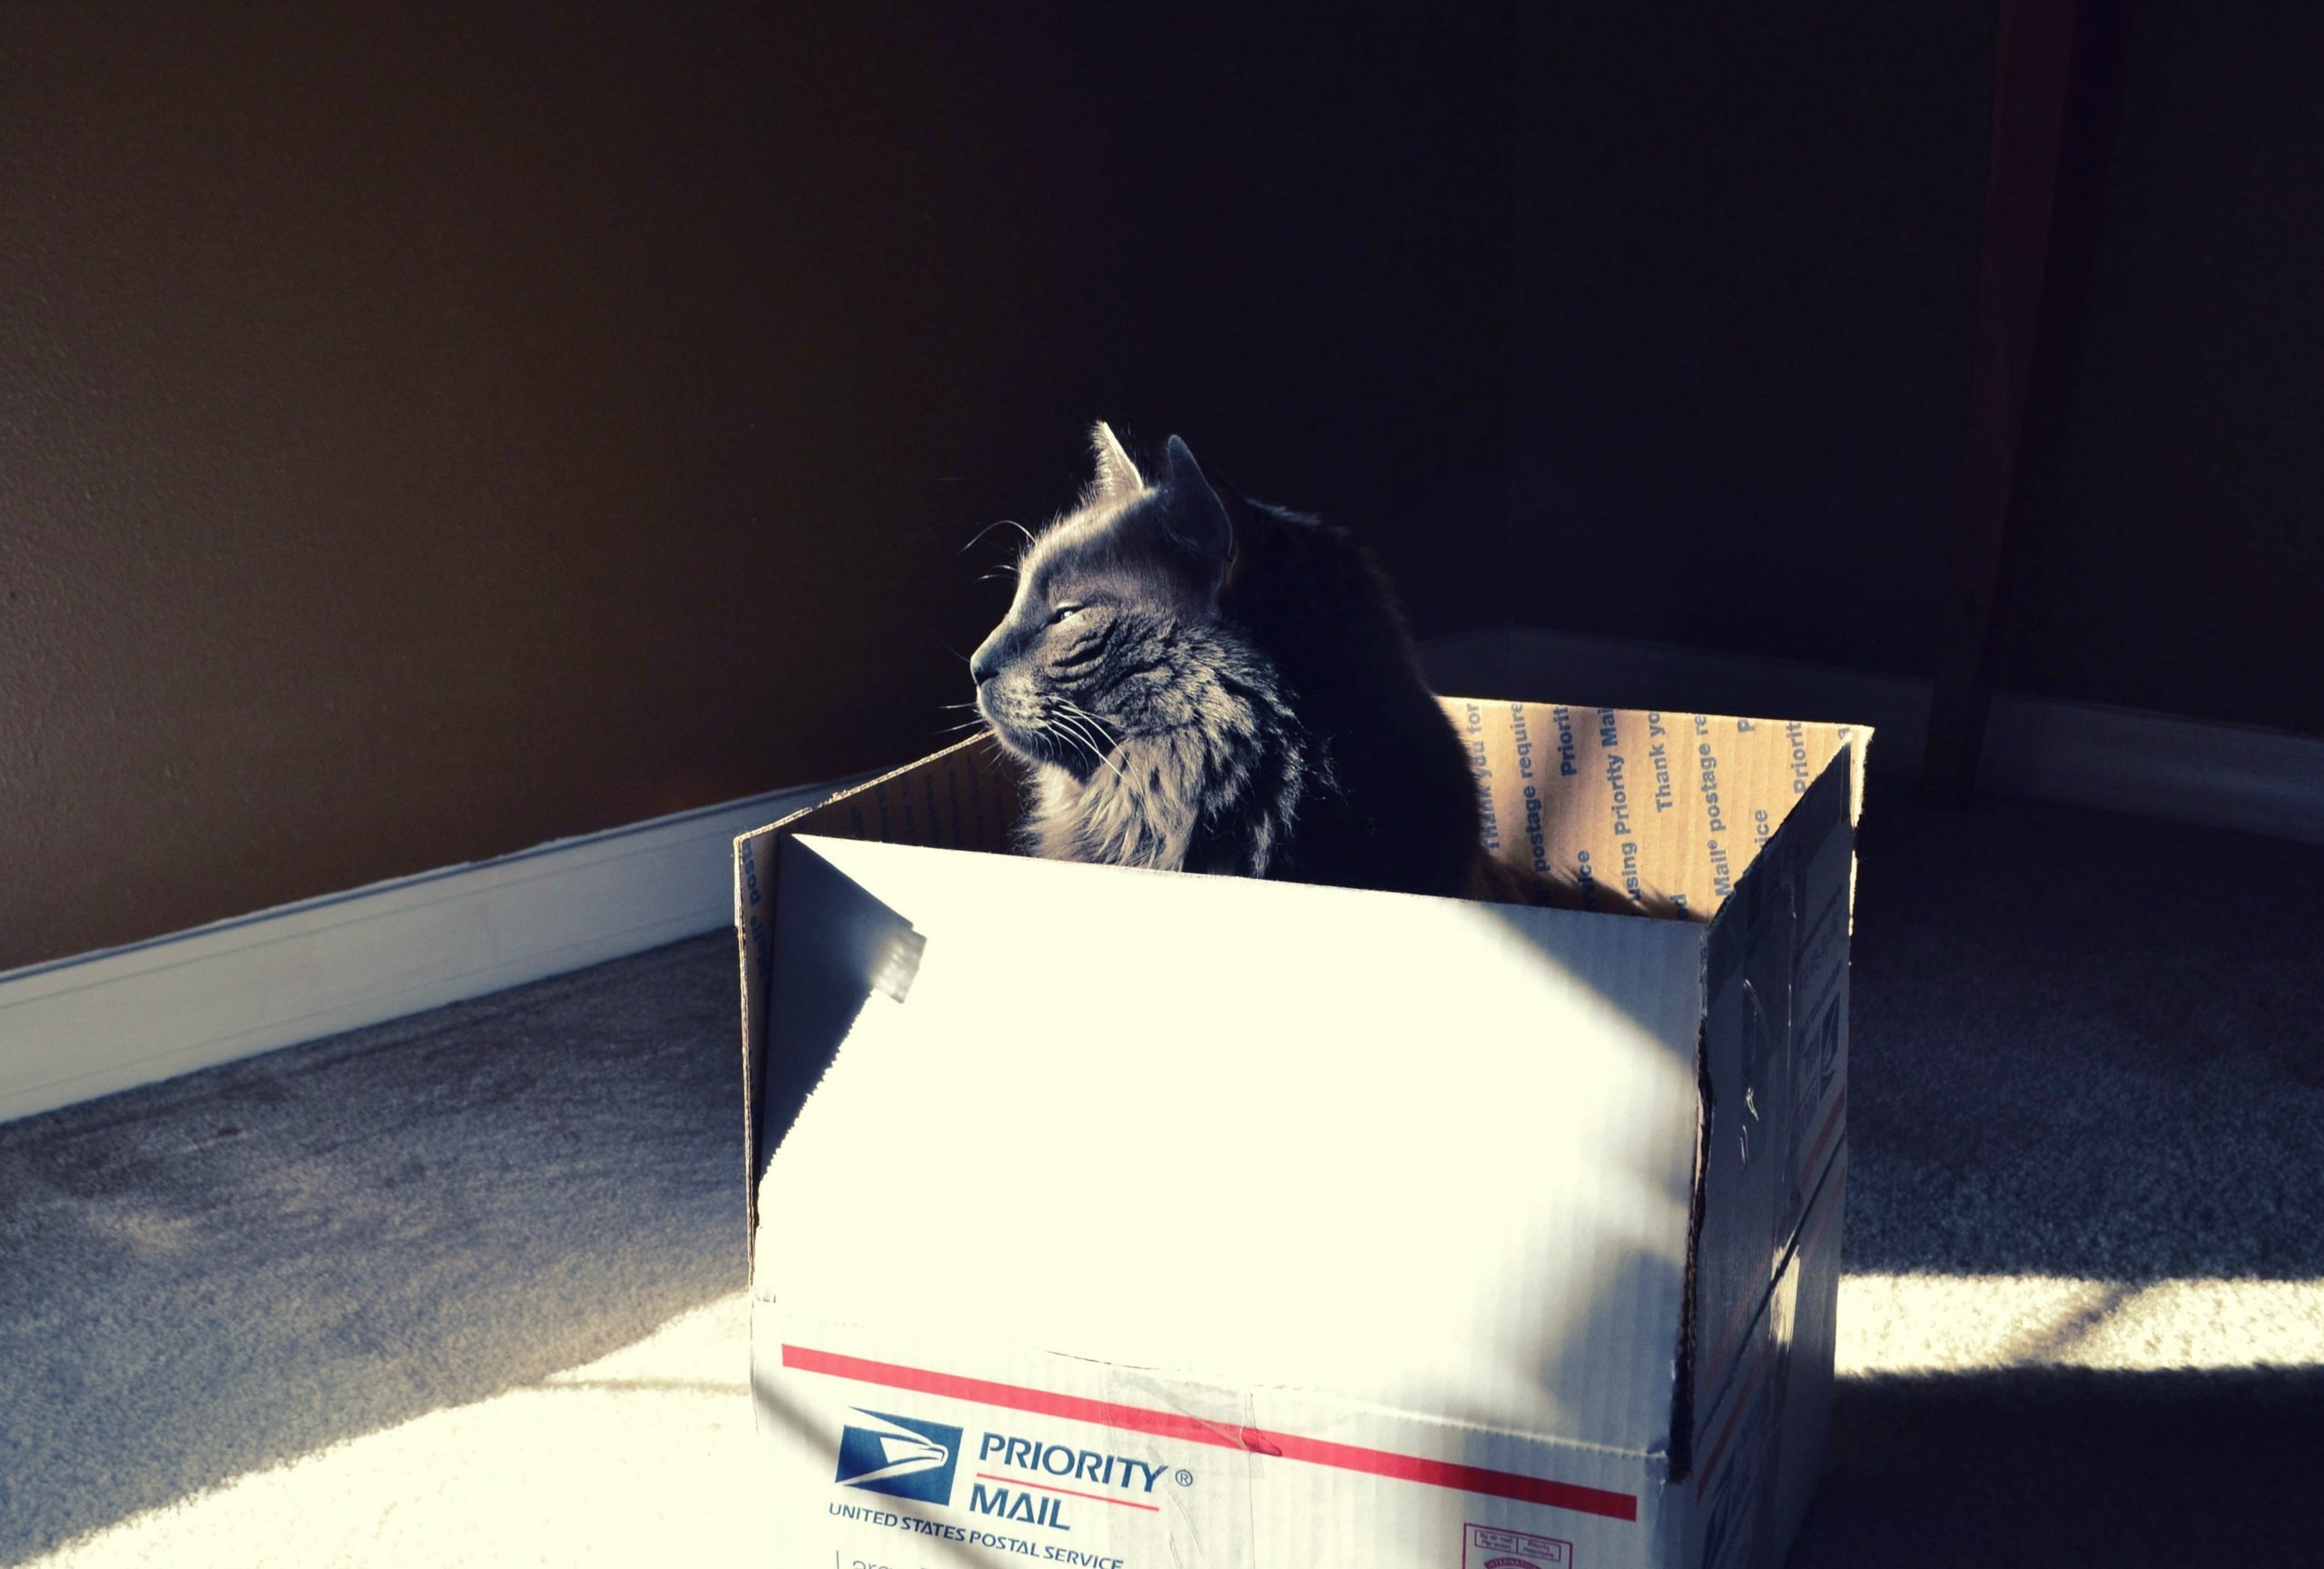 General 2560x1728 cats animals sunlight black cats boxes mammals carton box indoors